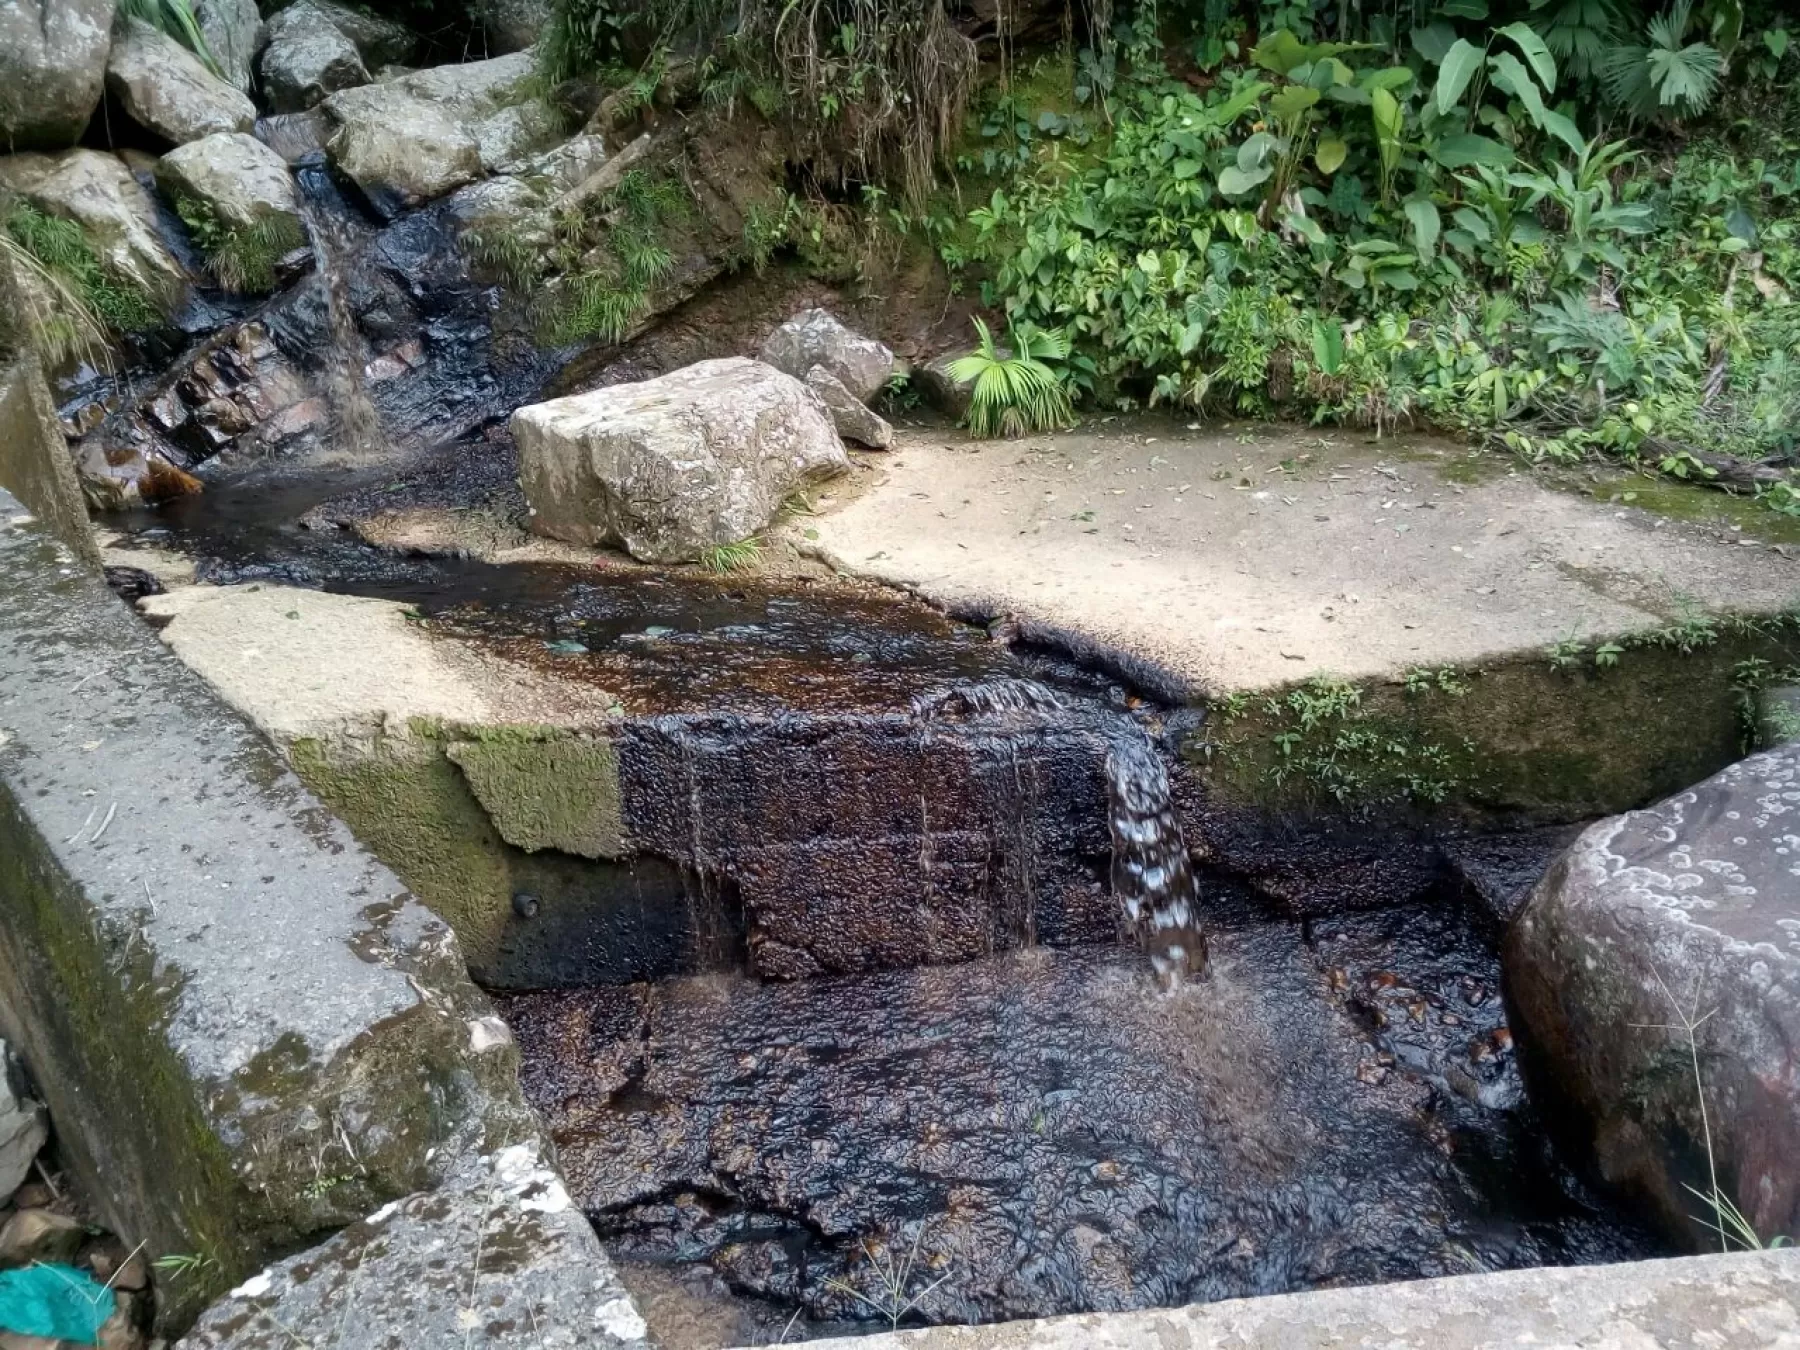 La voladura del oleoducto Caño Limón - Coveñas lleva crudo al río Cubogón, afluente del río Arauca. En alerta poblaciones ribereñas de la frontera colombo-venezolana.